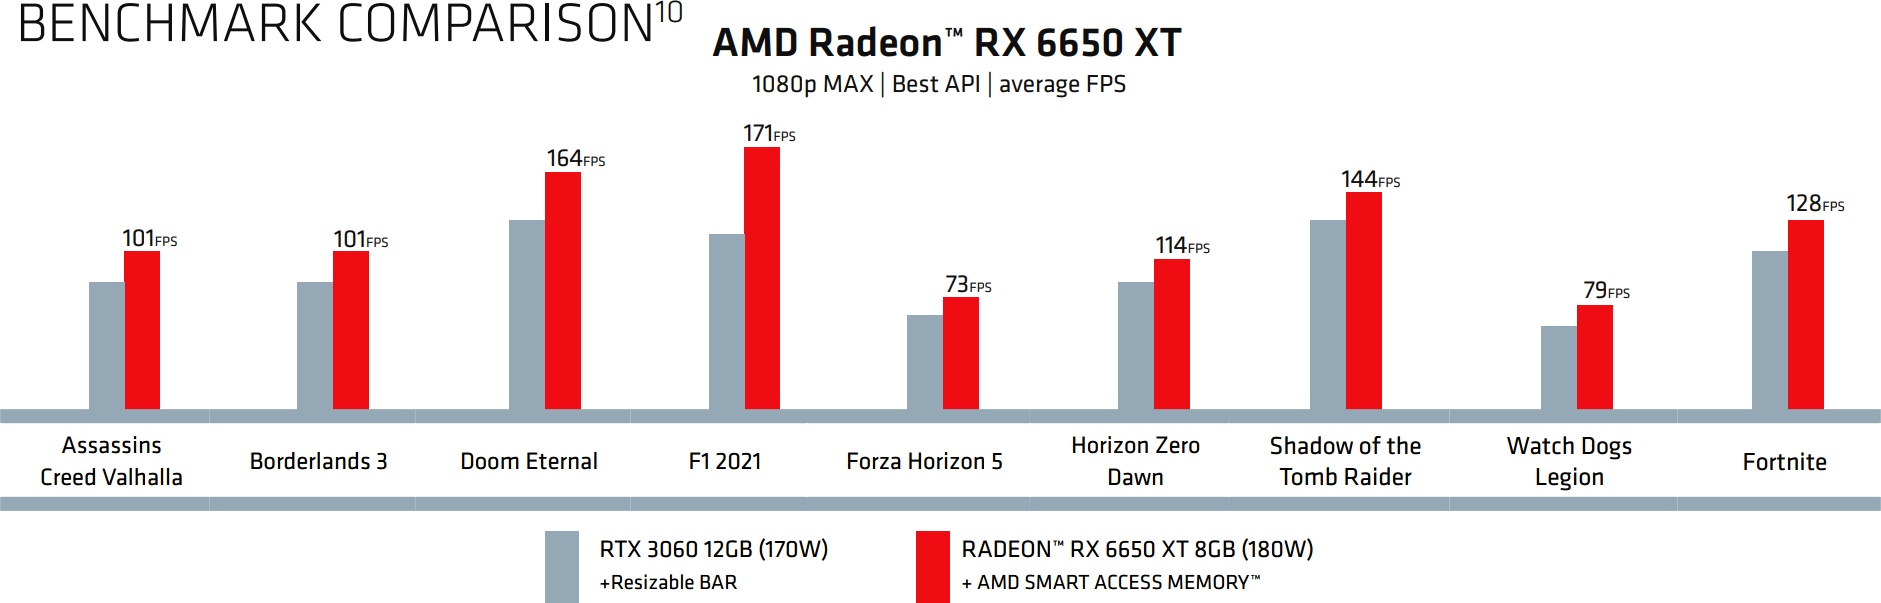 Nowe karty AMD debiutują na rynku. Wiemy już o nich wszystko